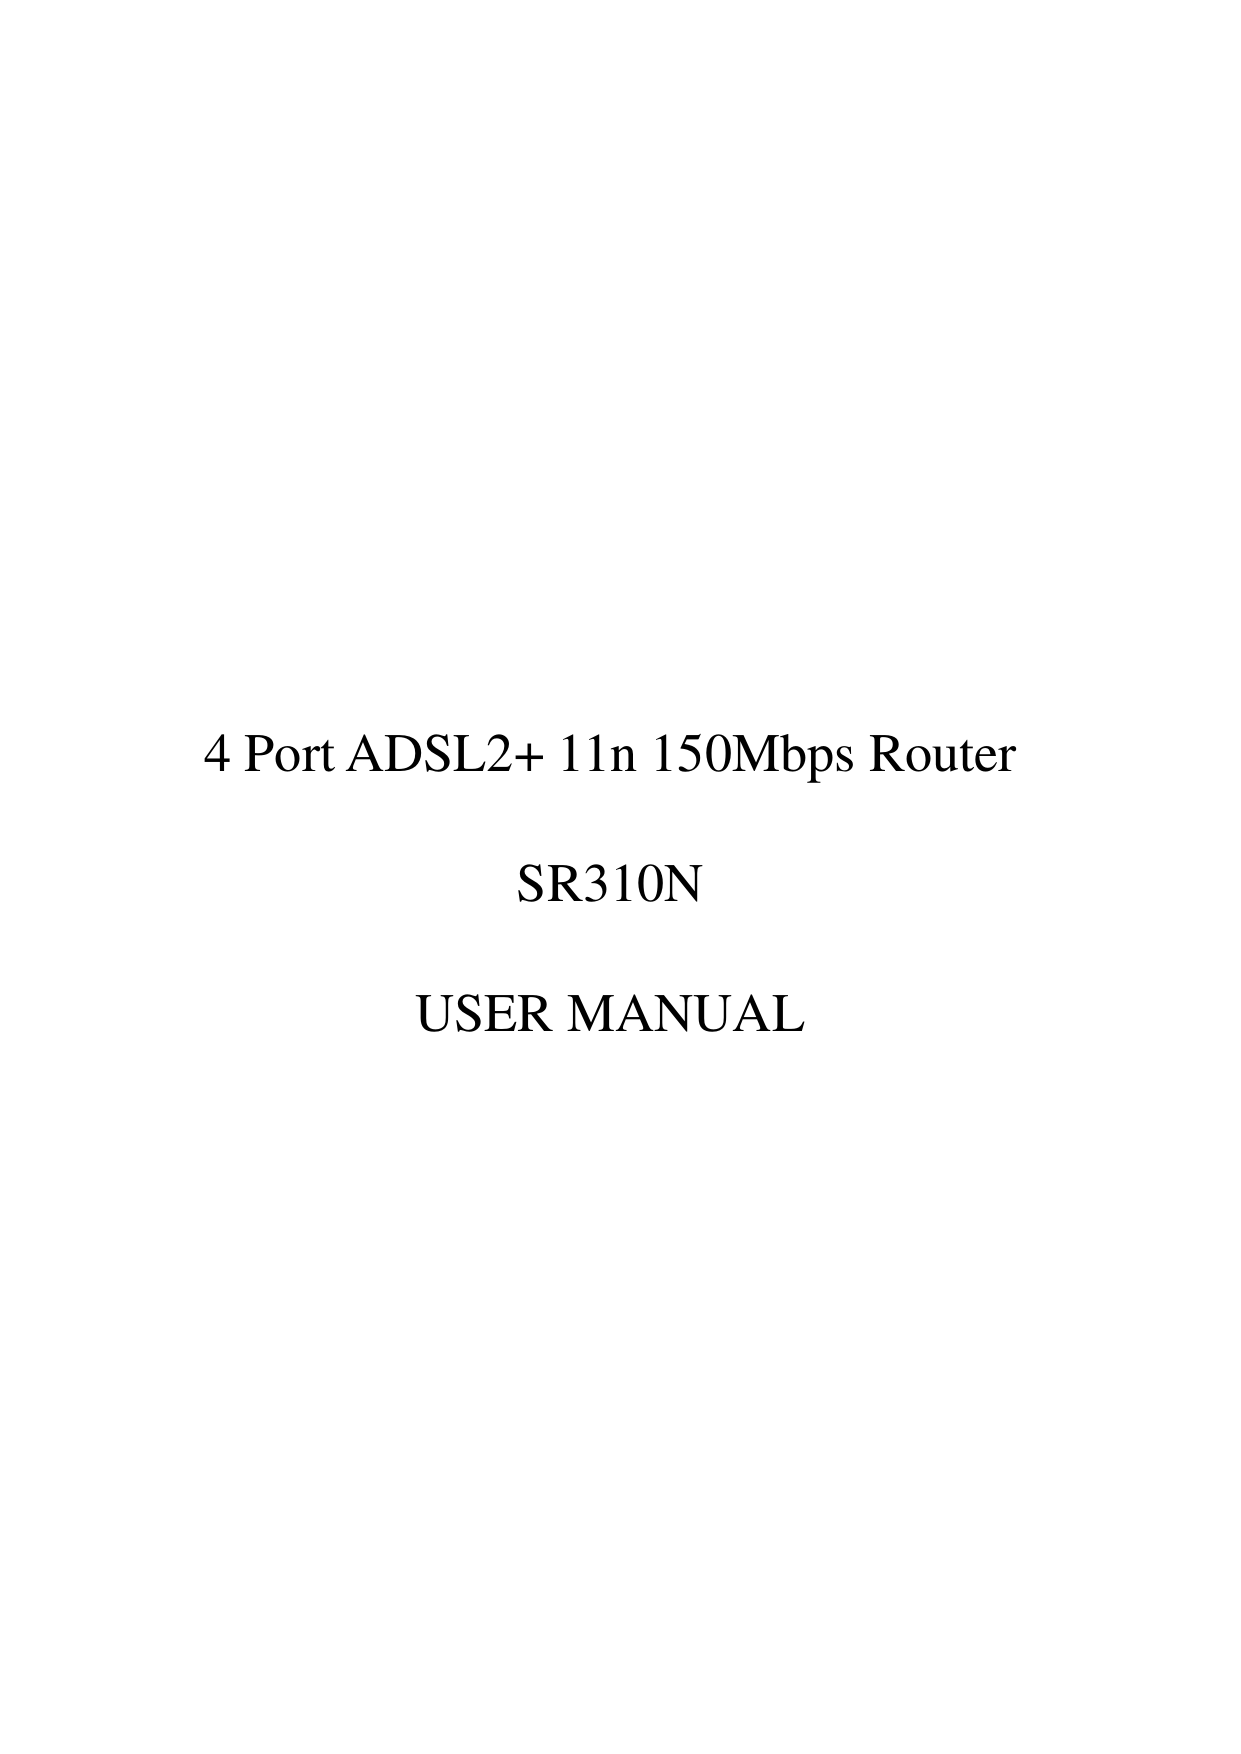                 4 Port ADSL2+ 11n 150Mbps Router  SR310N  USER MANUAL       